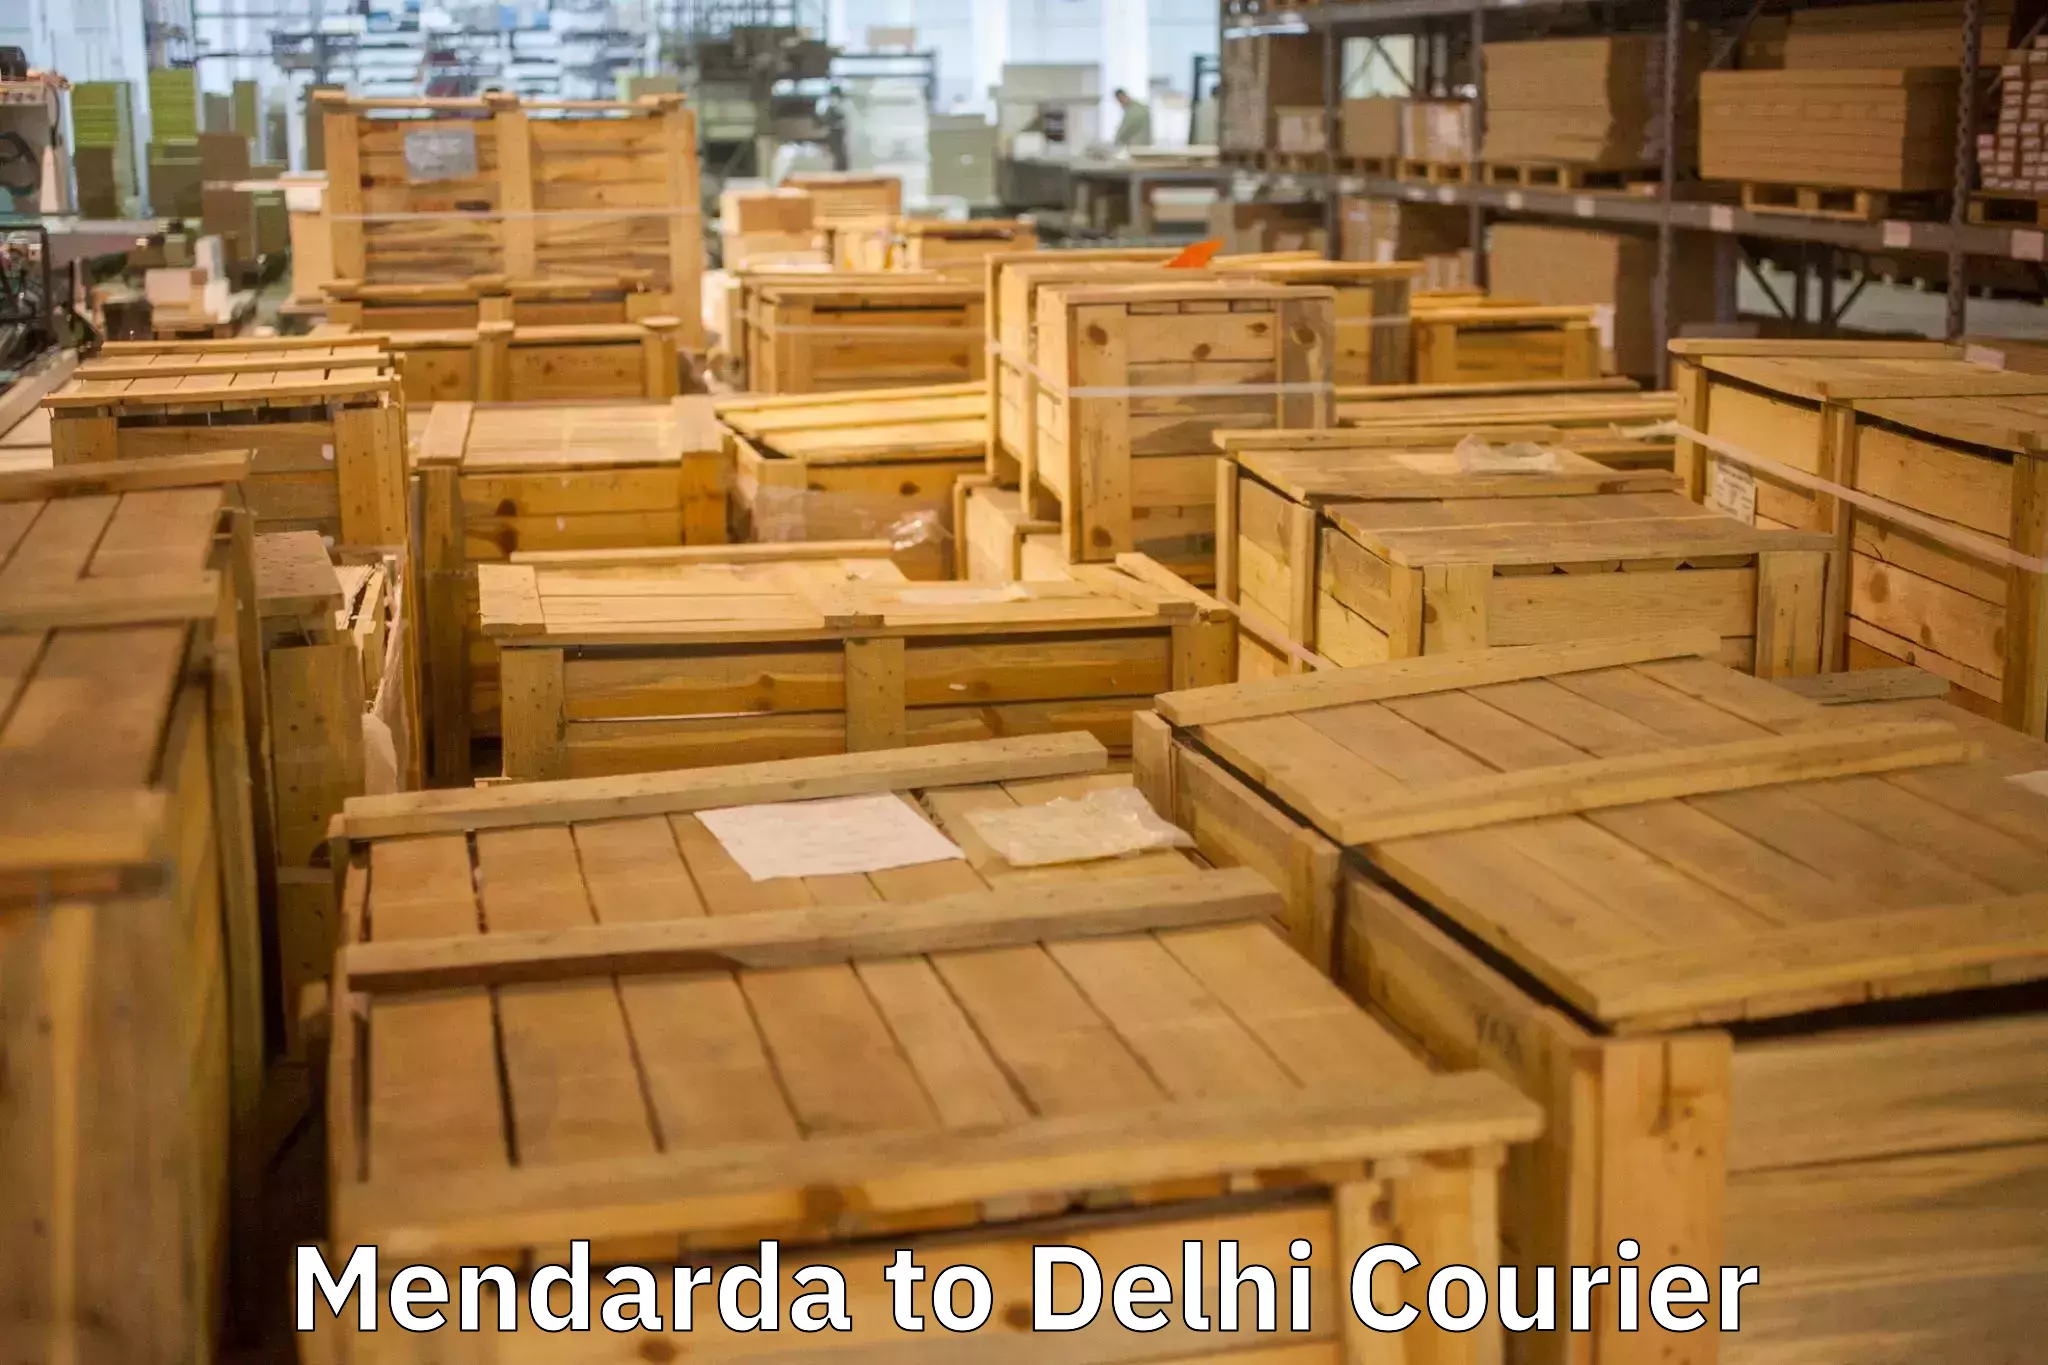 Comprehensive moving assistance Mendarda to Delhi